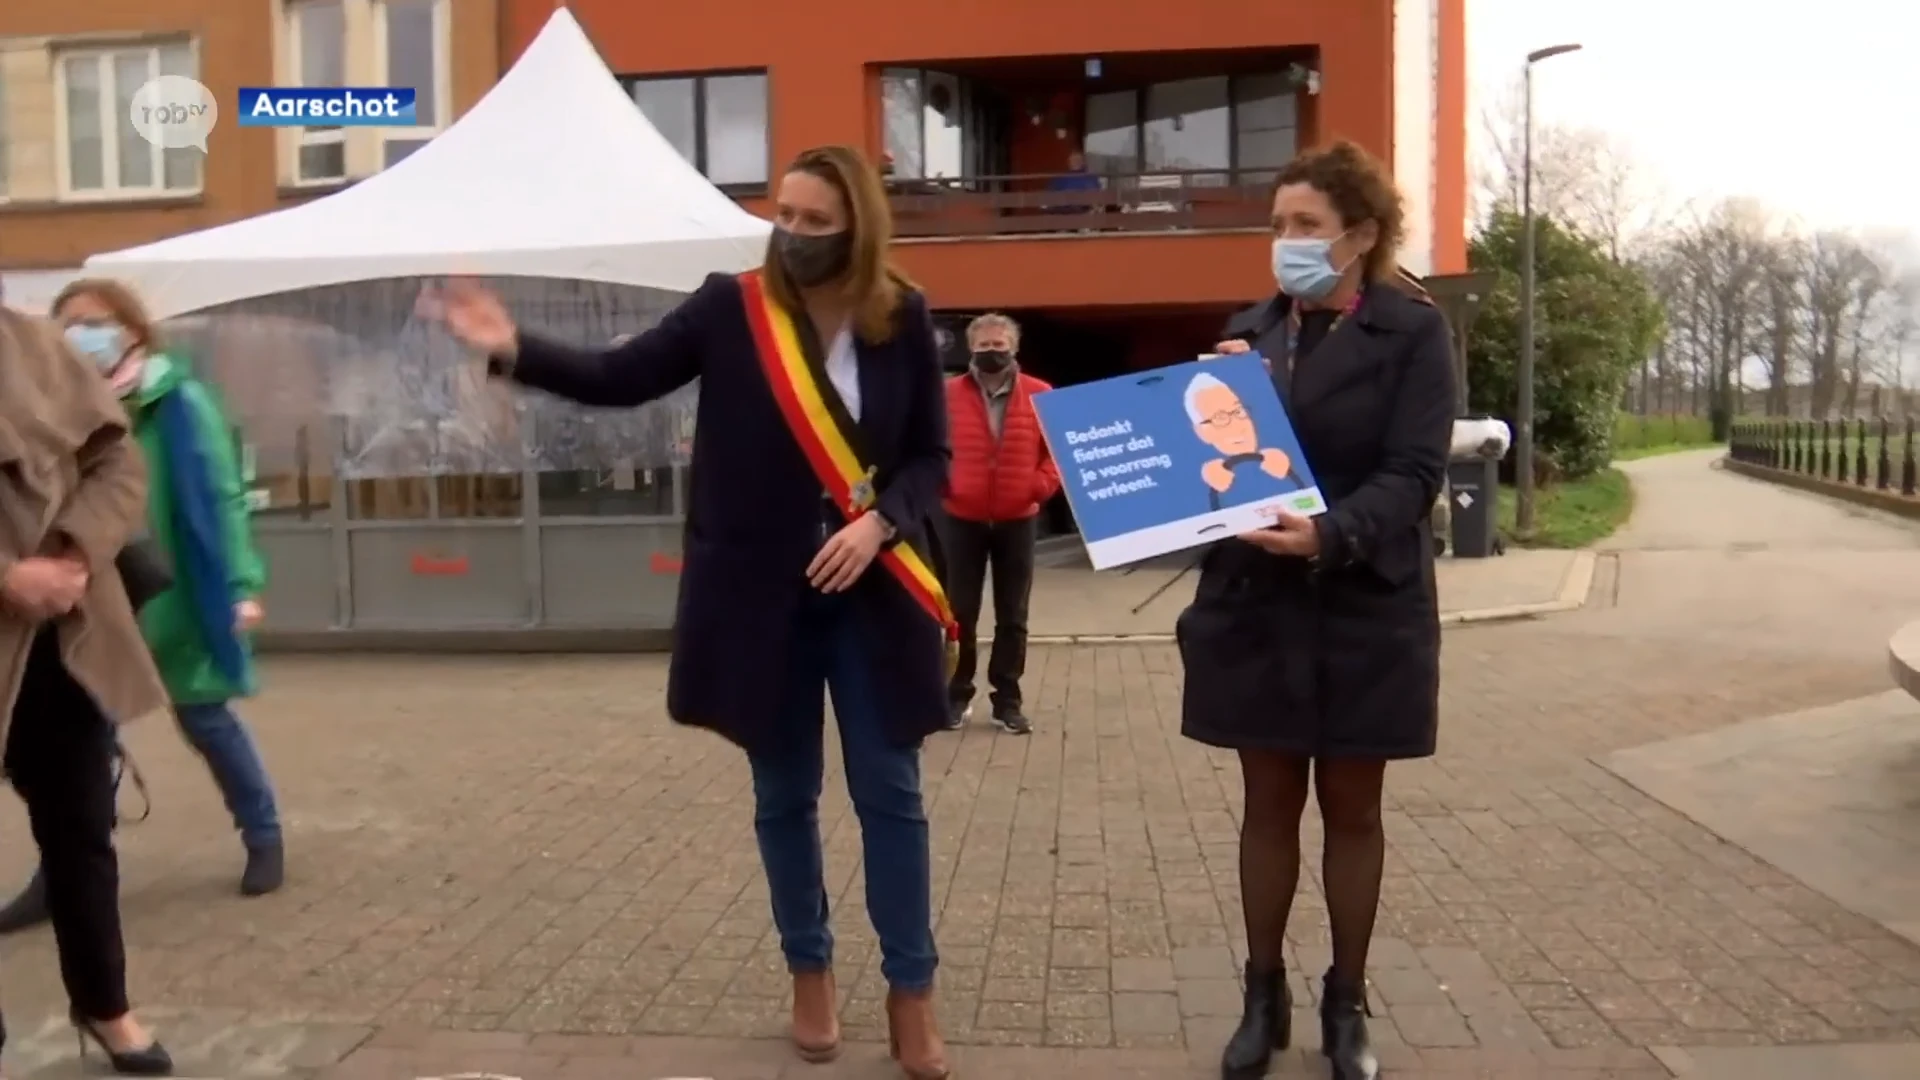 Campagne rond veilig fietsen van start in Aarschot: "Gewoon elkaar respecteren en hoffelijk zijn"